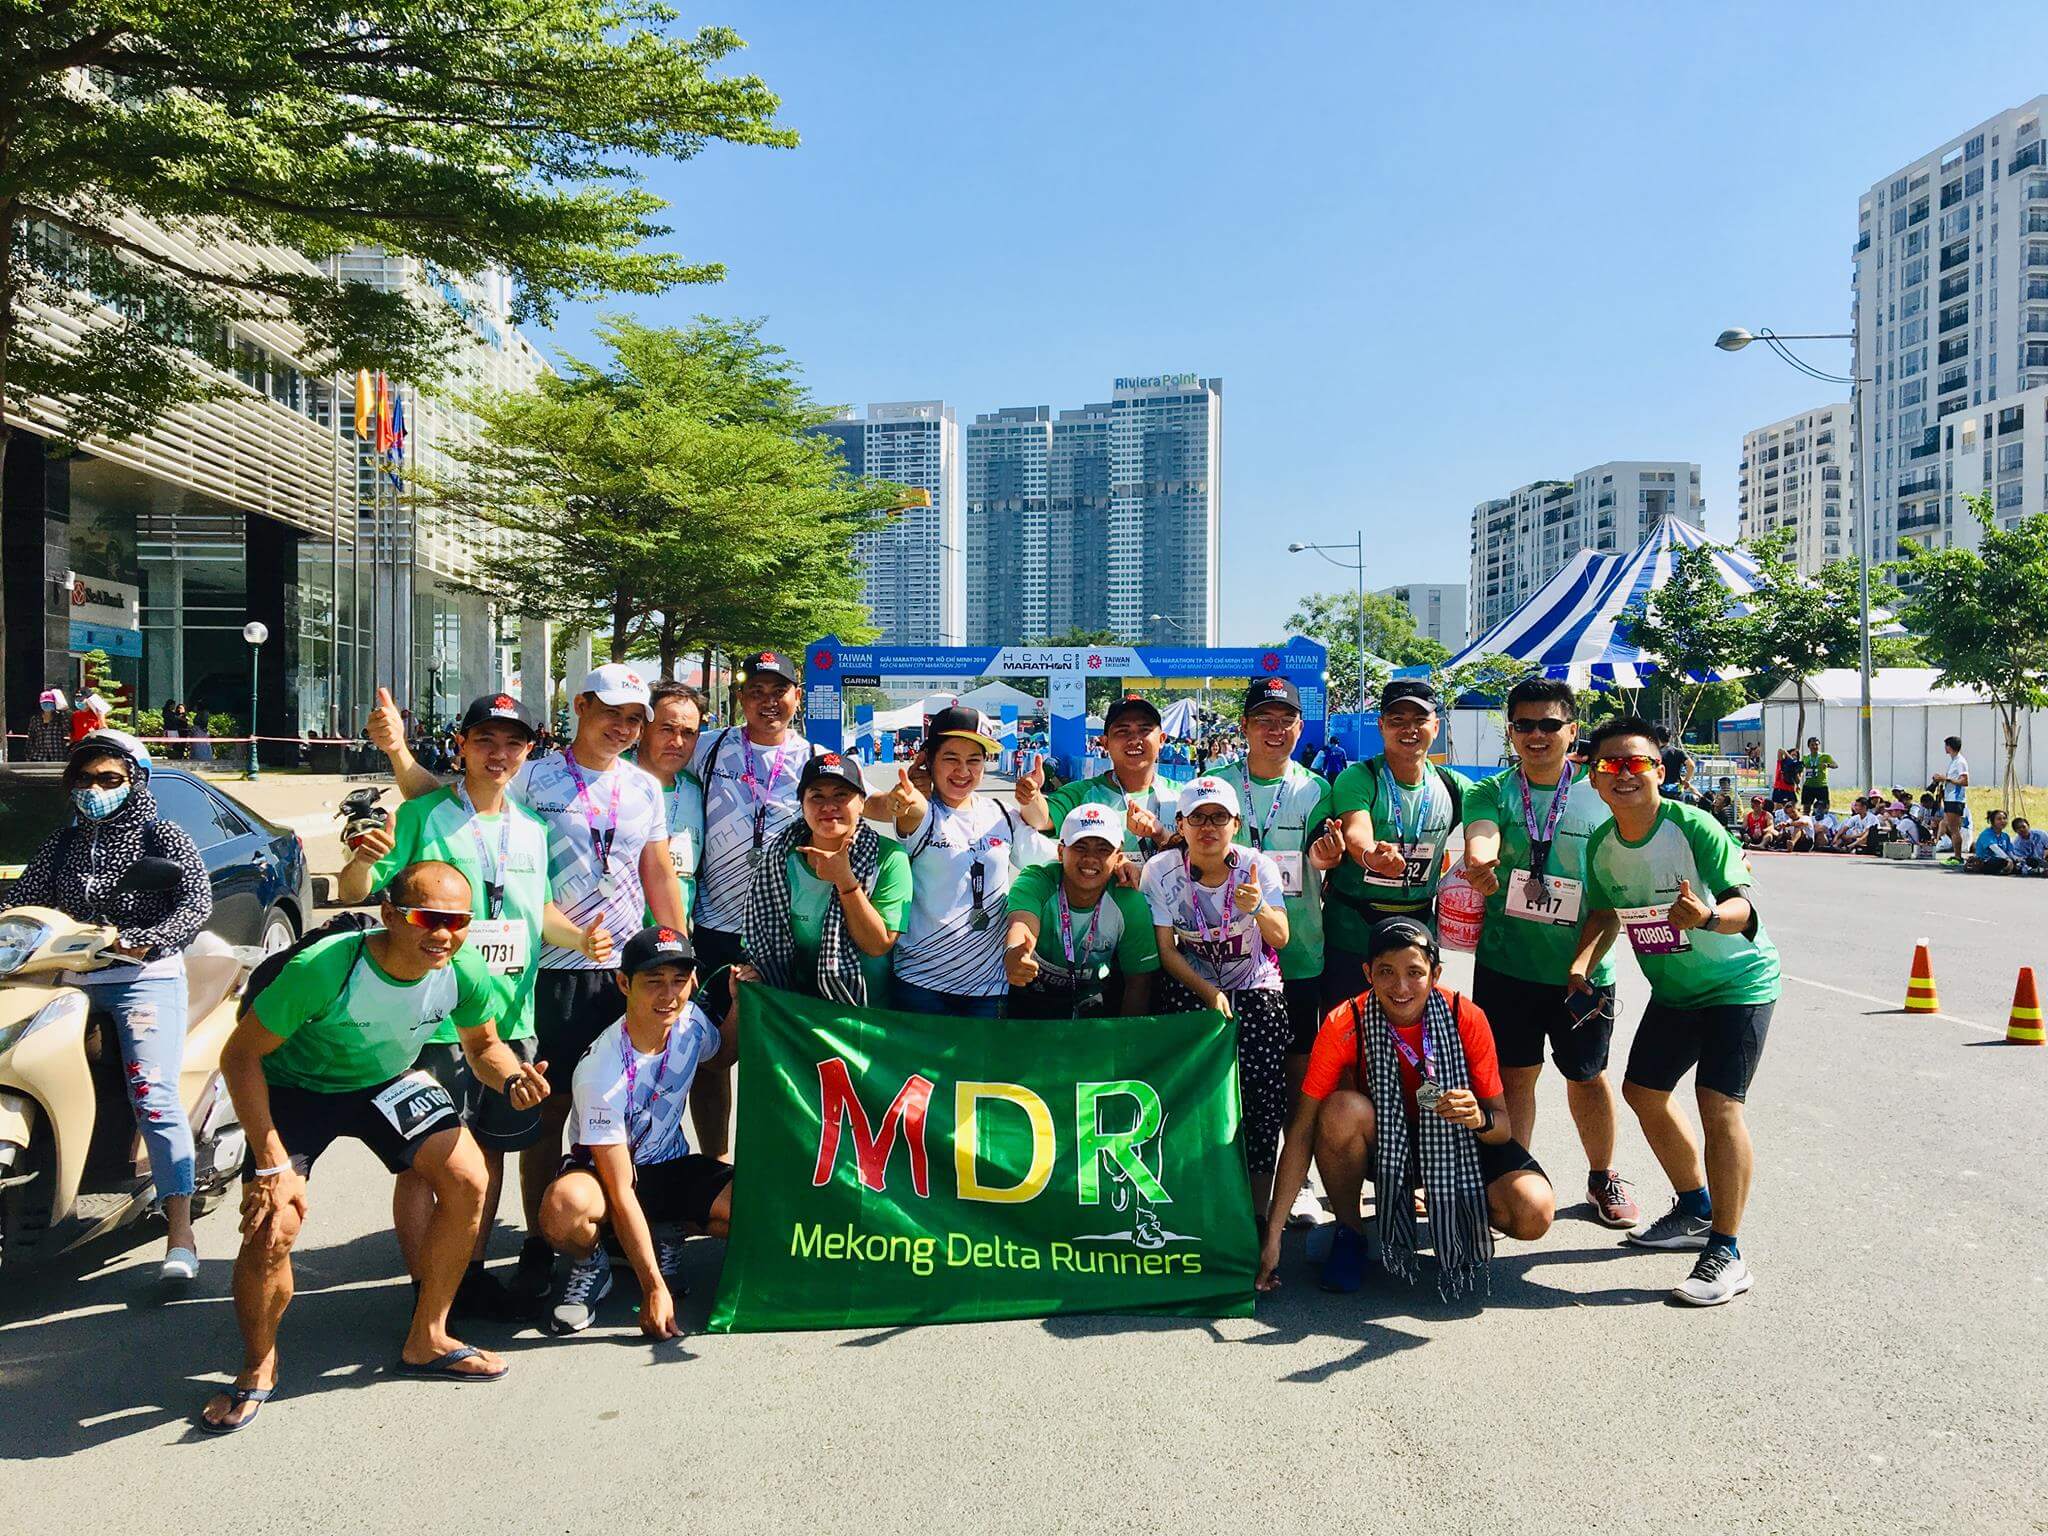 Giải chạy “màu mỡ” nhất 2019: Mekong Delta Marathon